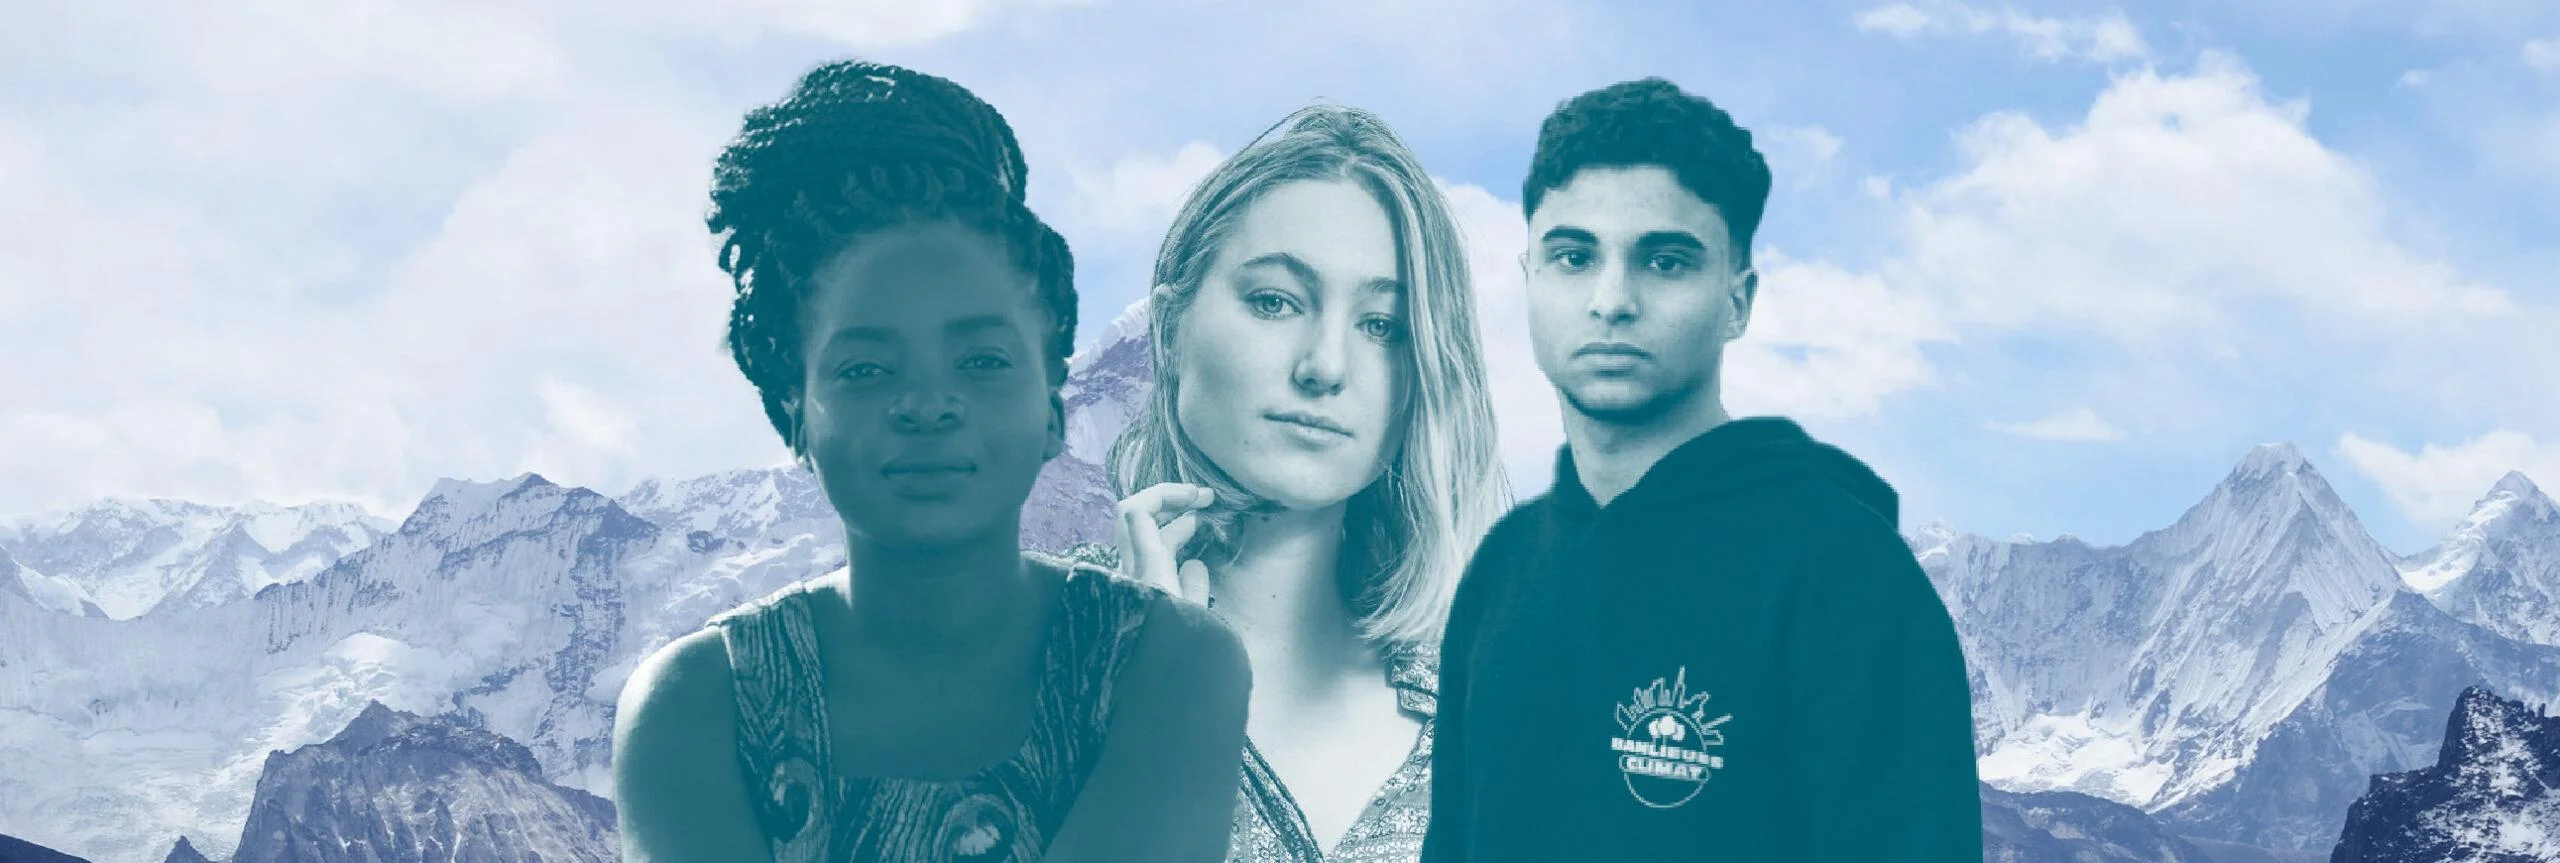 7 jeunes activistes (qui ne sont pas Greta Thunberg) qui montrent que la relève est assurée